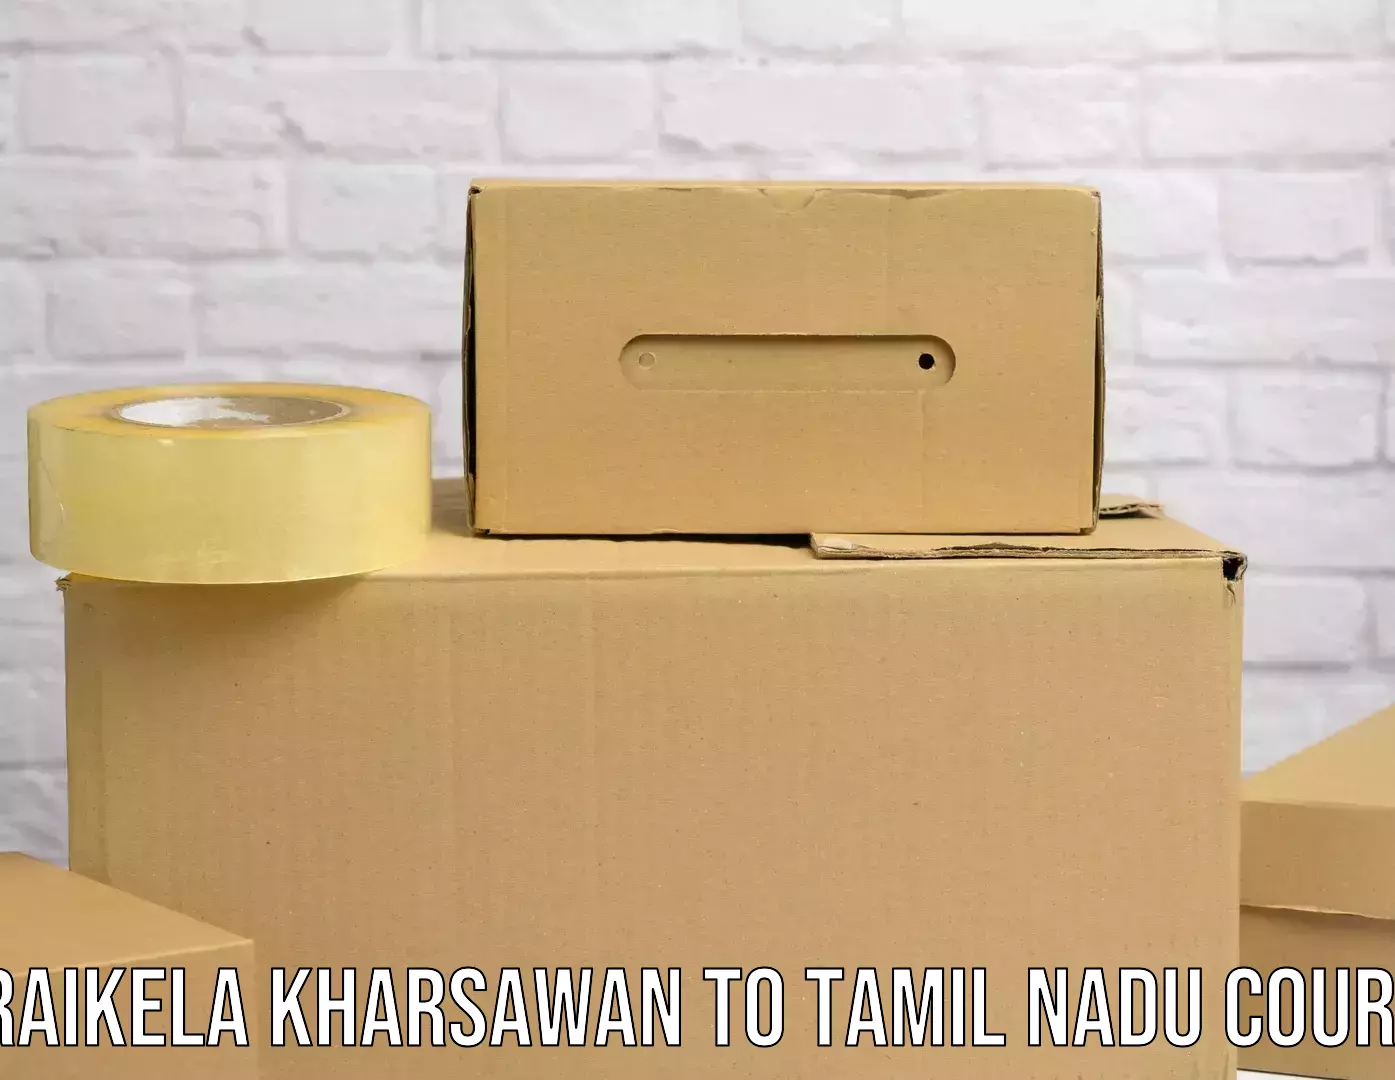 Customized delivery options Seraikela Kharsawan to Orathanadu